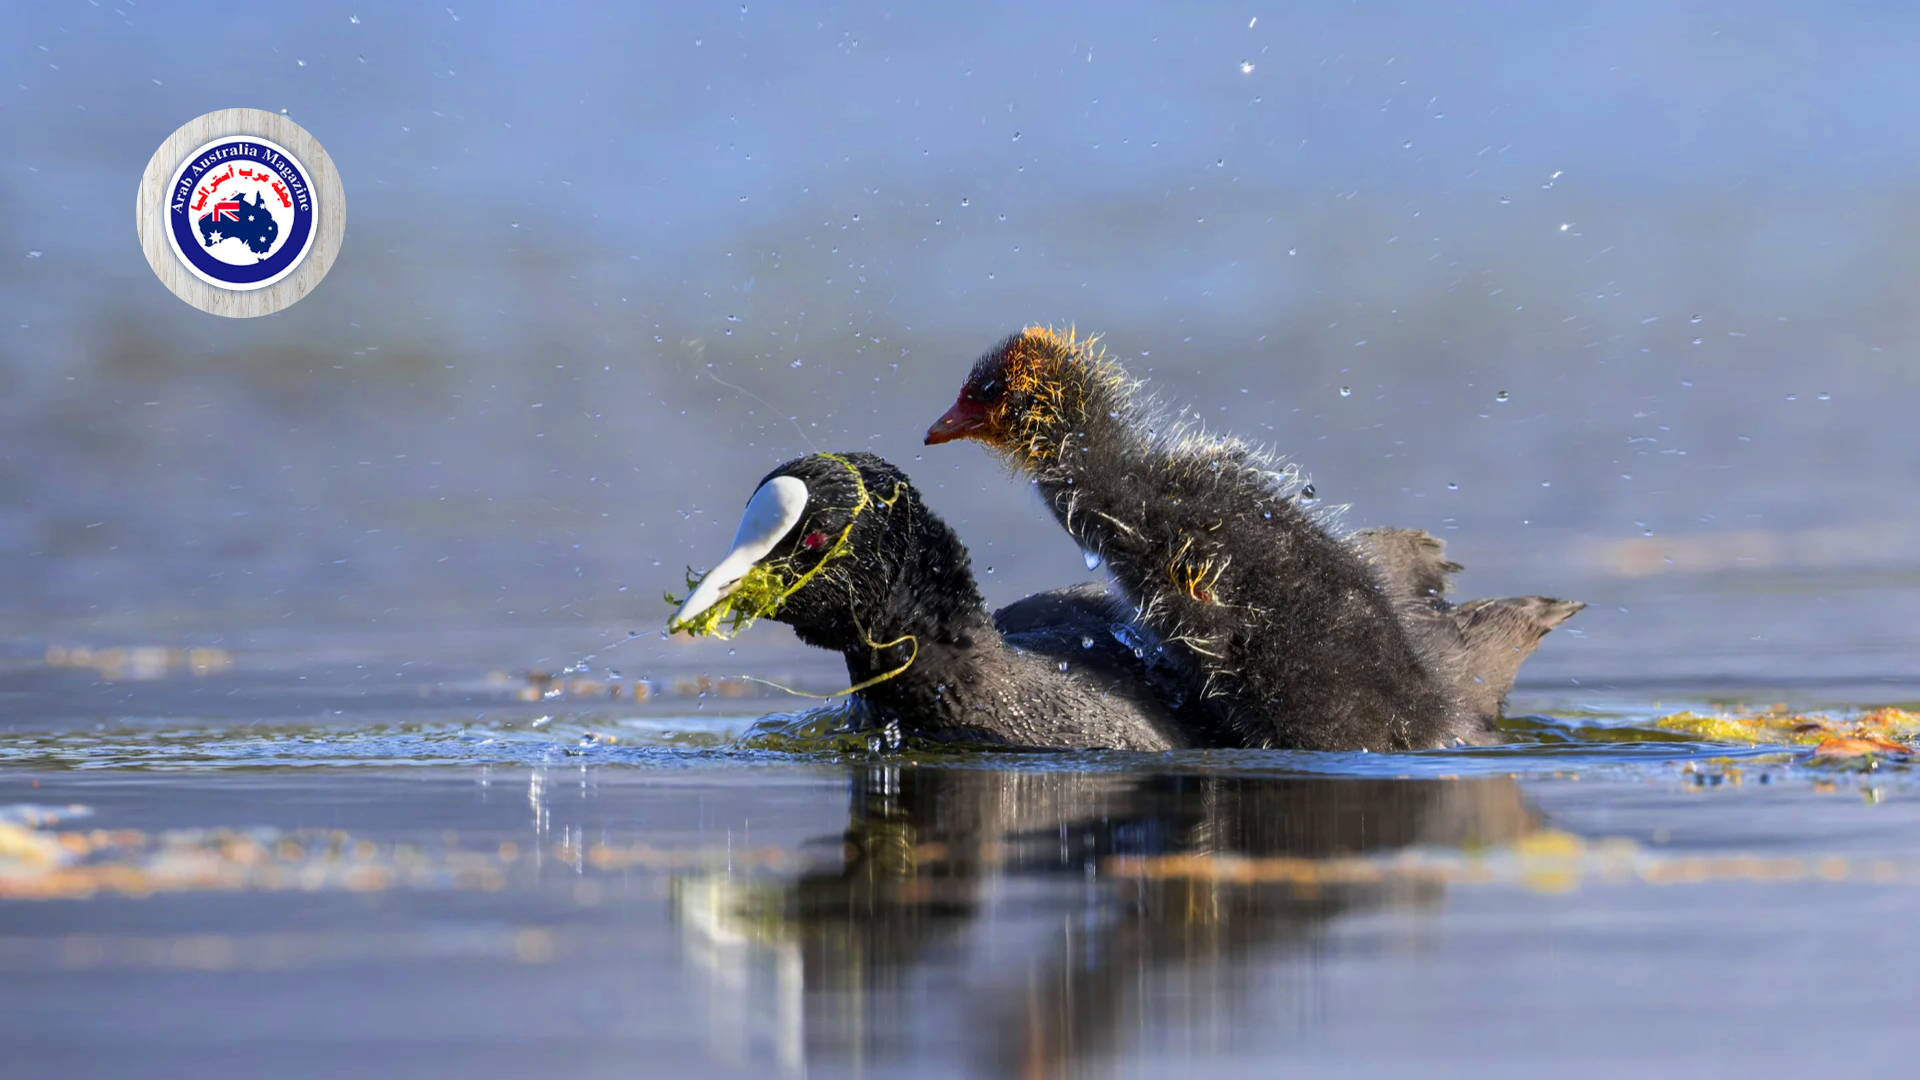 مصورة أسترالية توثق ما قام به طائر جائع يسبح بجوار والدته